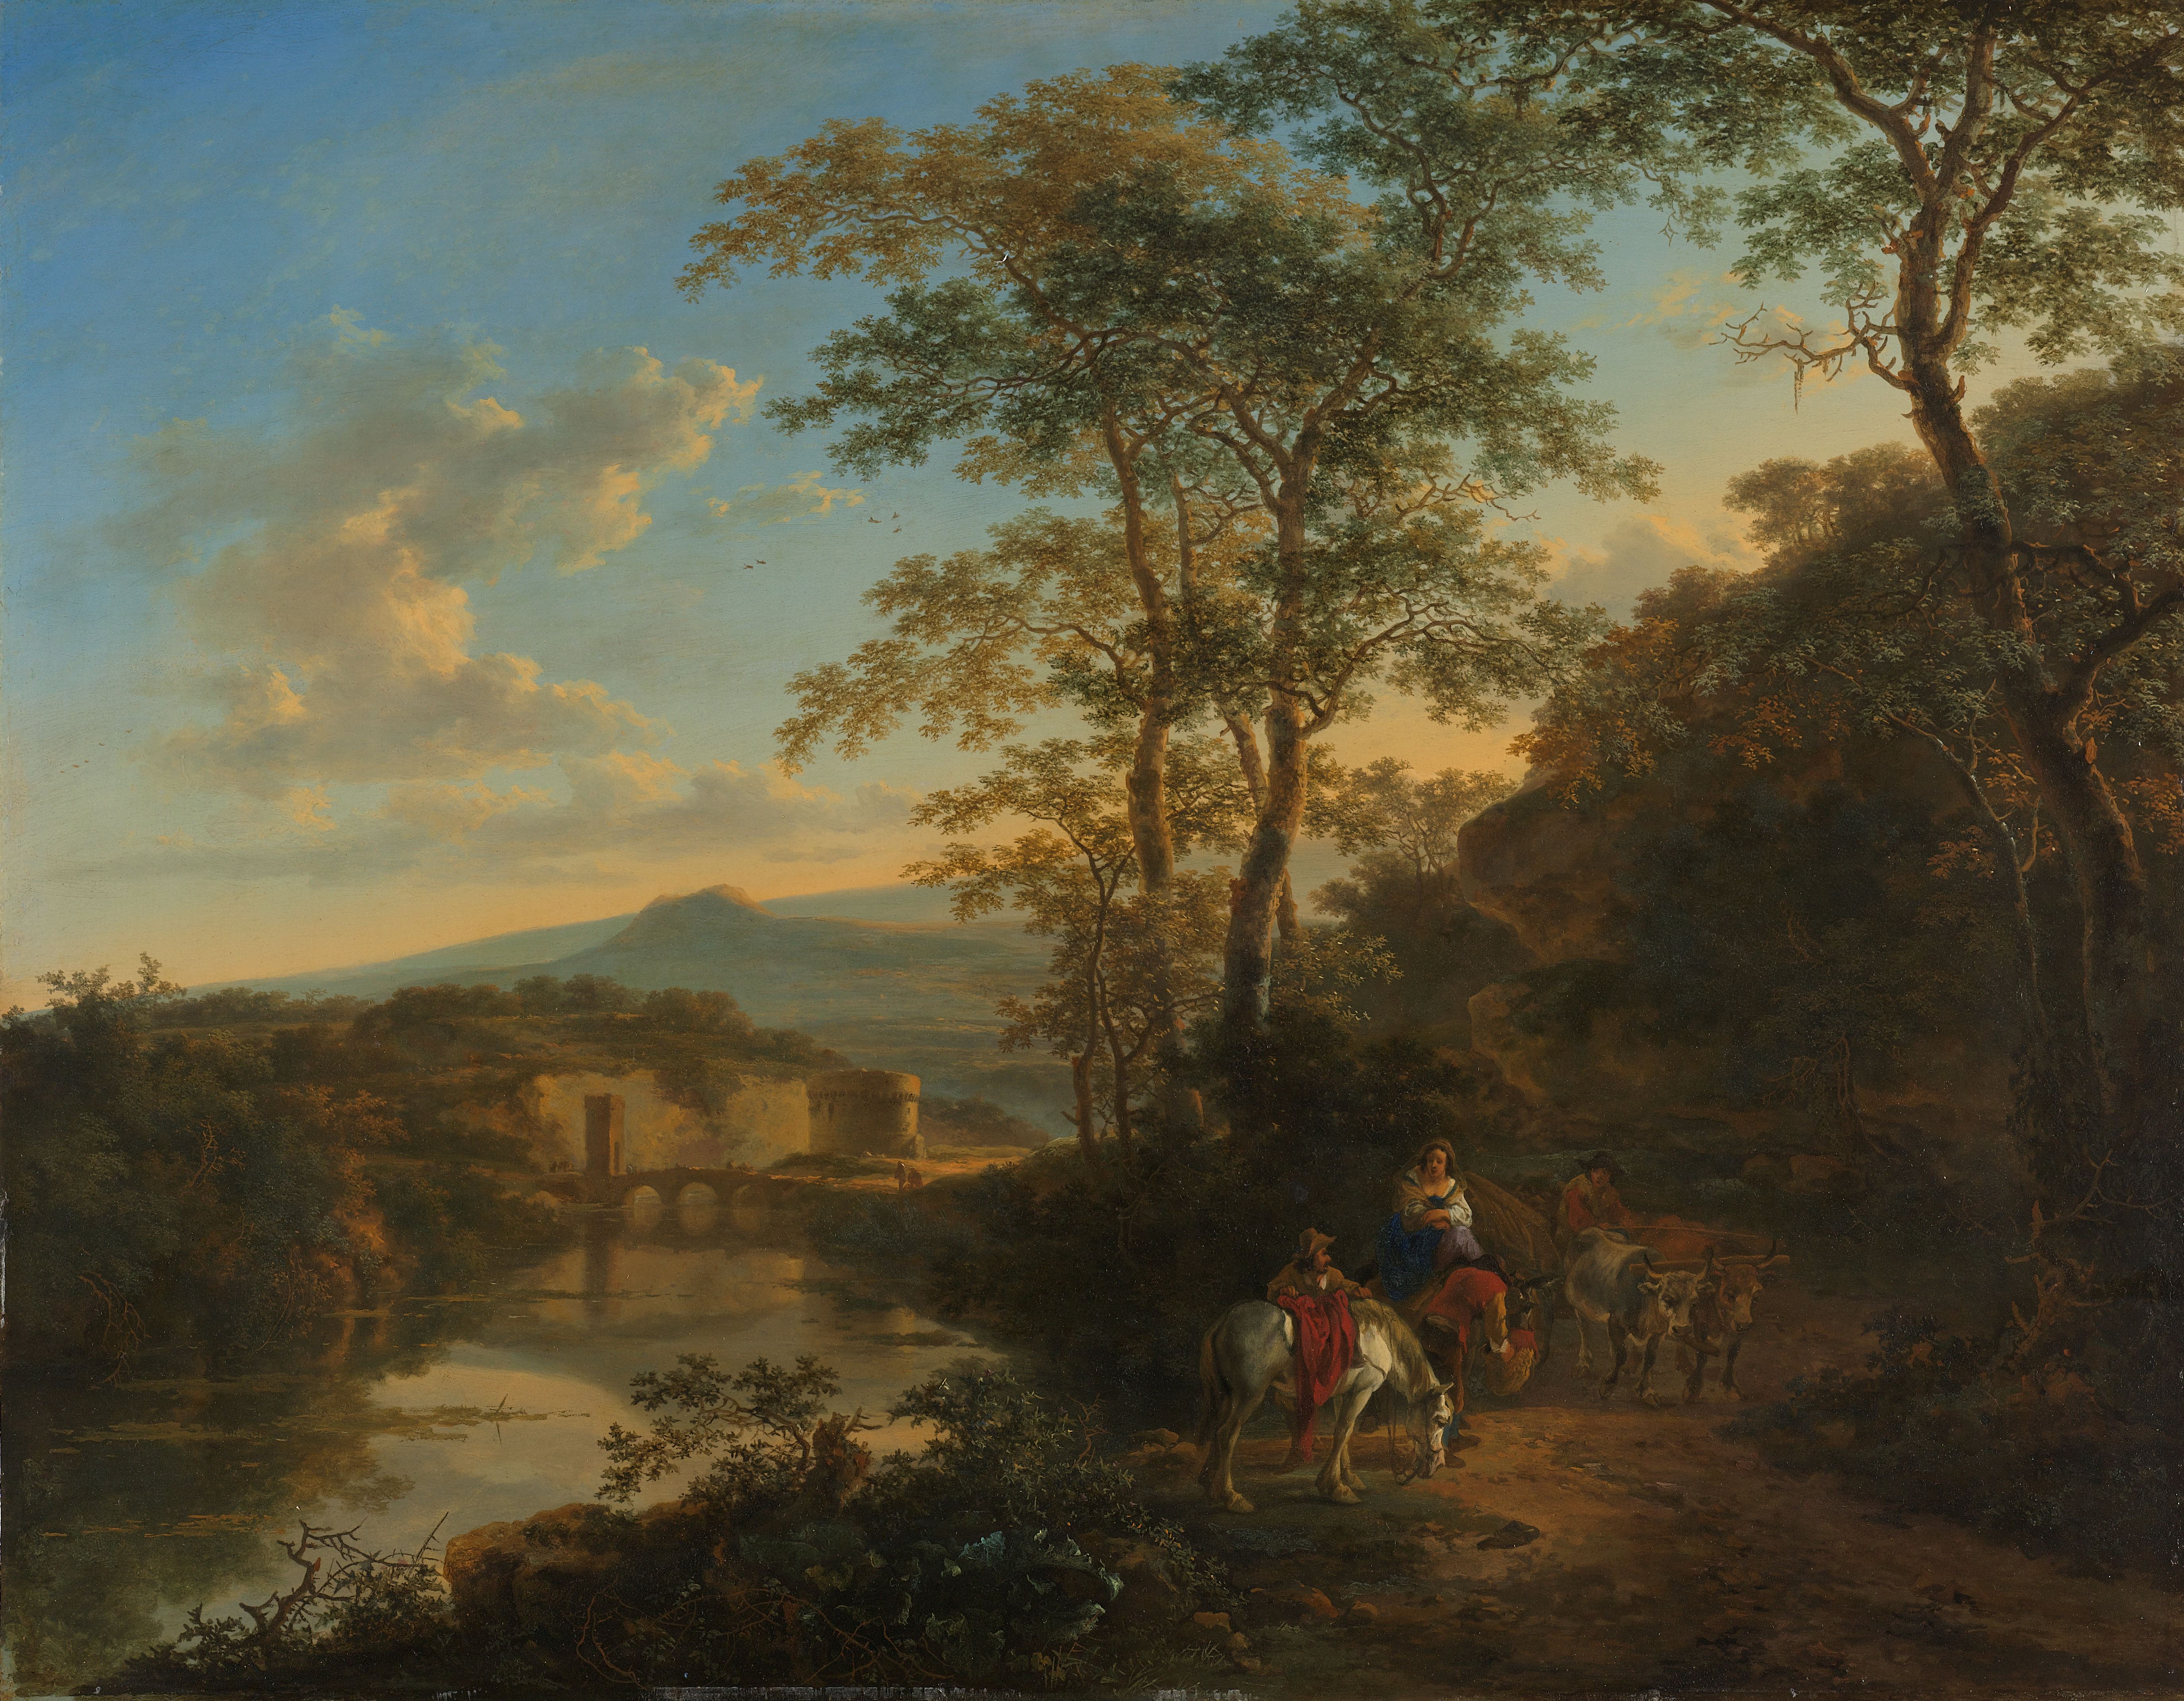 Schilderij van Jan Both, Italiaans landschap met de Ponte Licana over de Aniene rivier, ca. 1650-52.